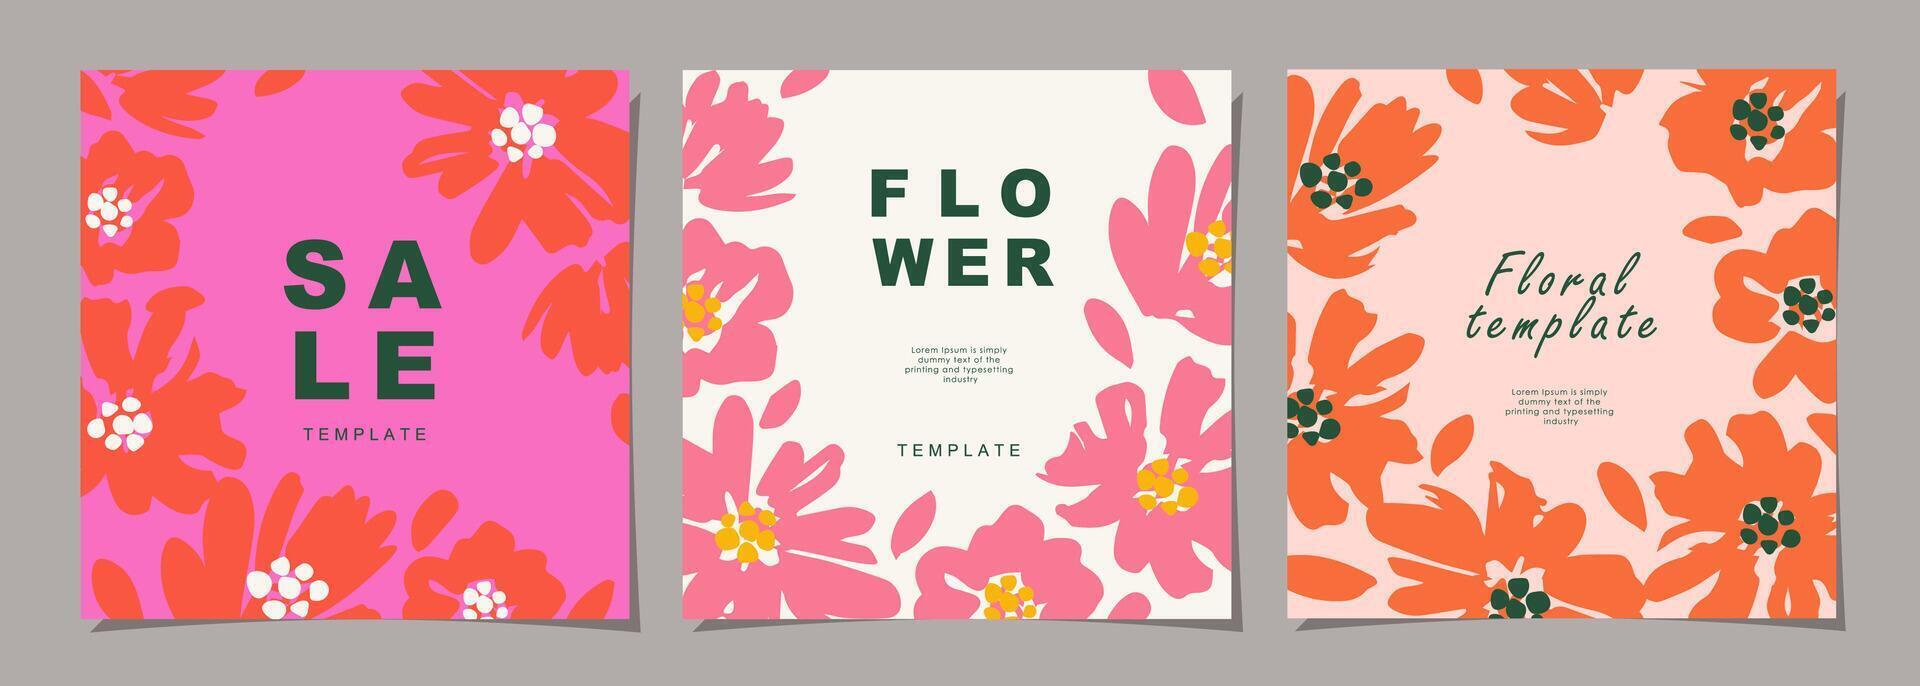 floral modelo conjunto para póster, tarjeta, cubrir, pared arte, bandera en moderno minimalista estilo y sencillo verano diseño plantillas con flores y plantas. vector